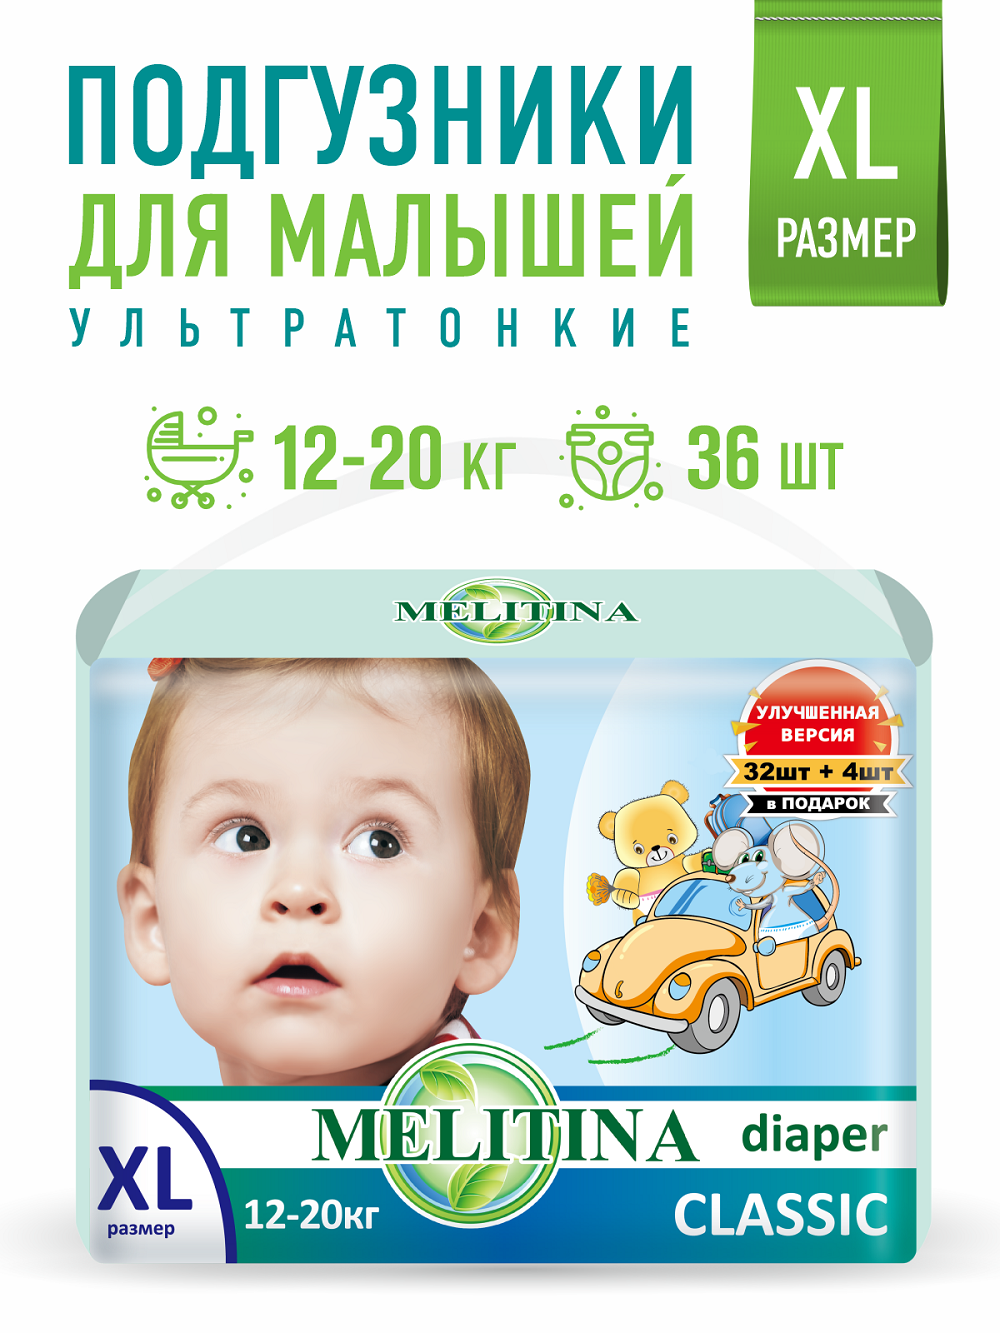 Подгузники Melitina для детей Classic размер XL 12-20 кг 36 шт 50-8432 - фото 1